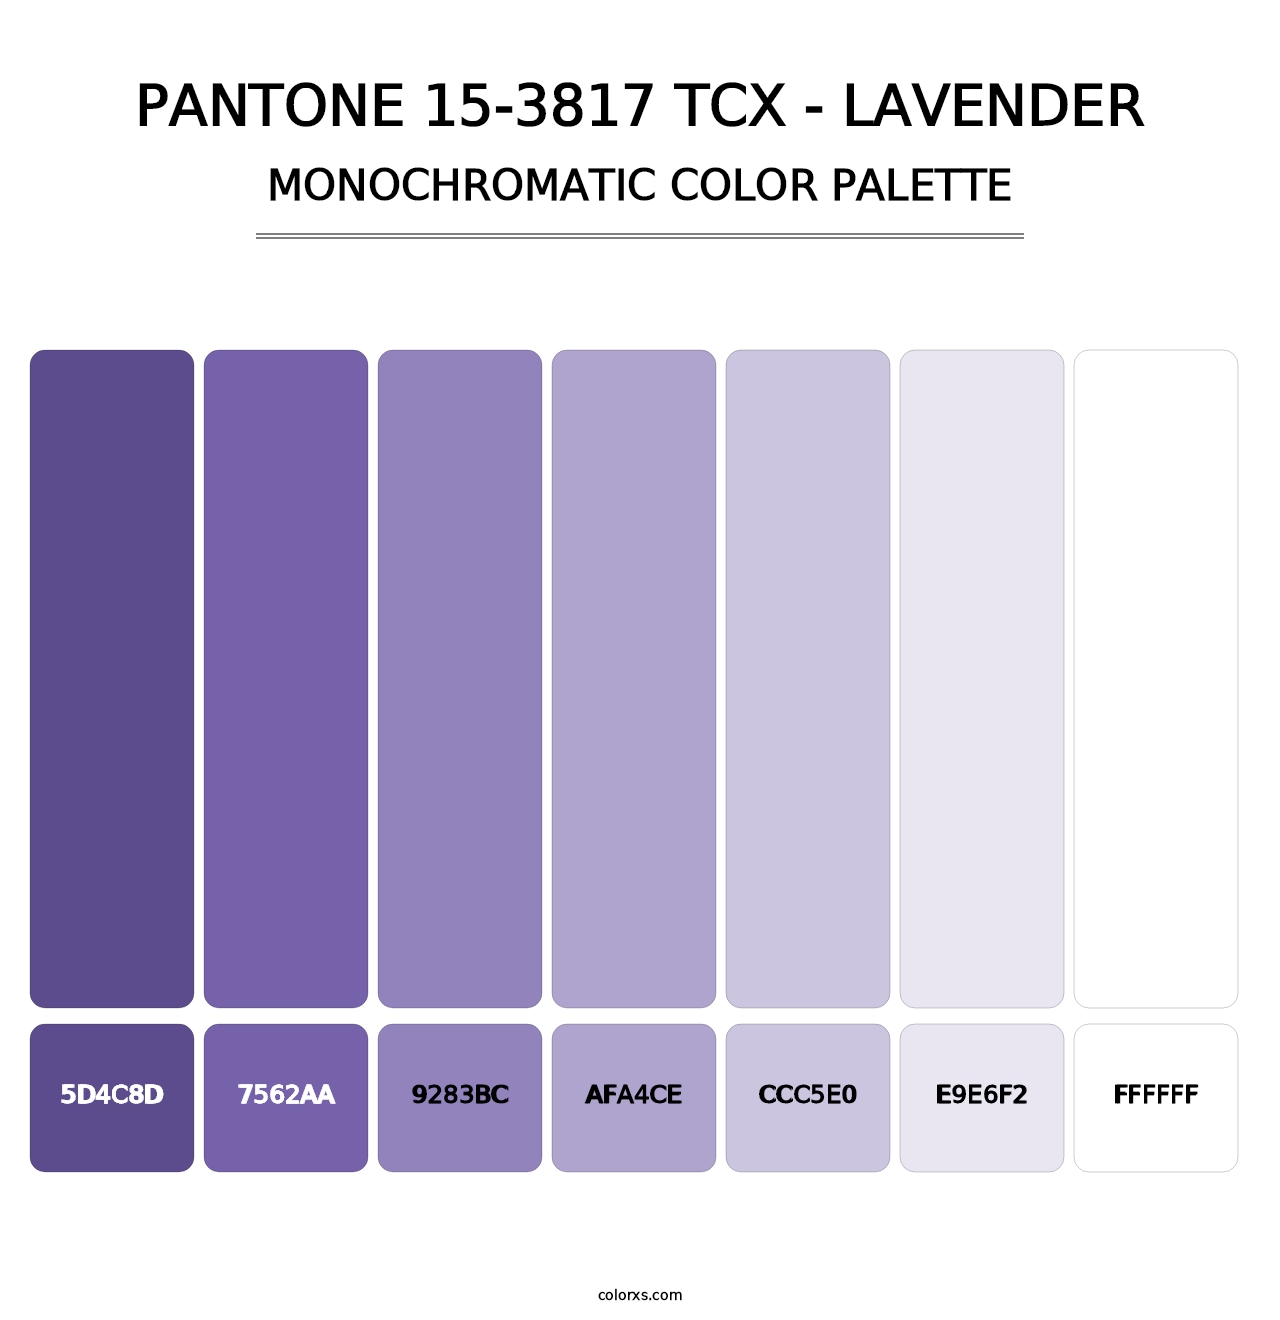 PANTONE 15-3817 TCX - Lavender - Monochromatic Color Palette